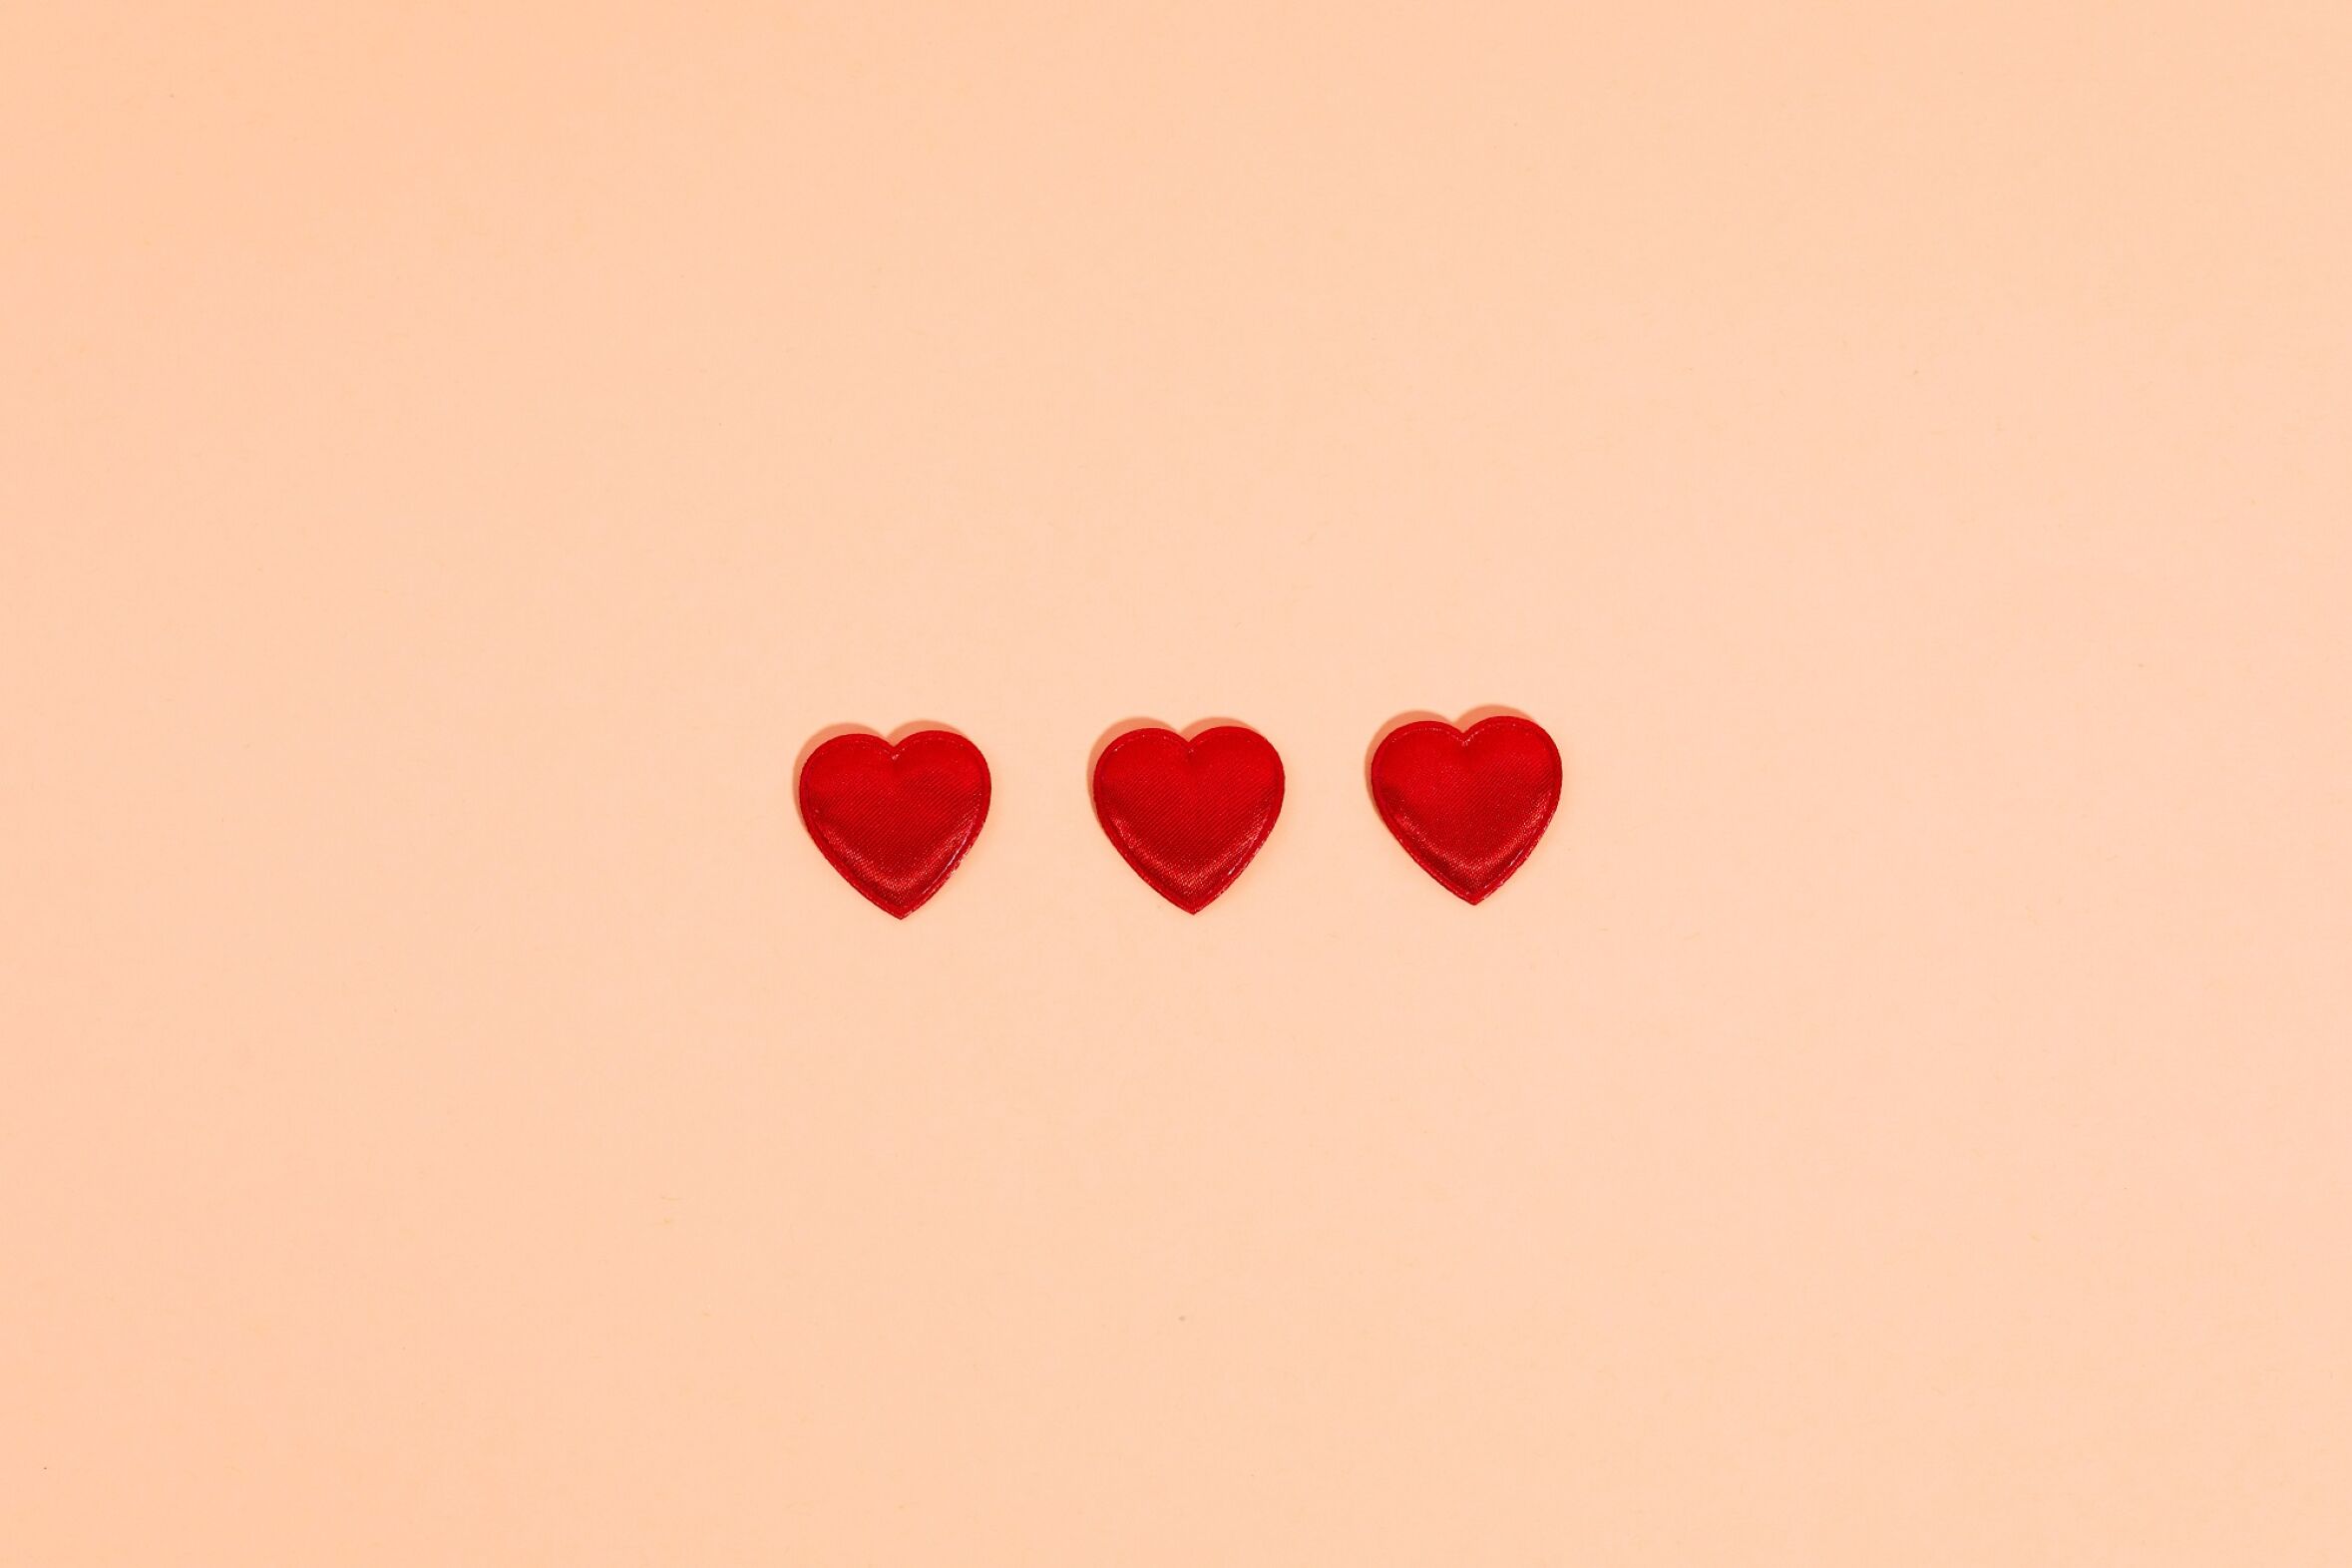 O significado de cada cor e tipo de emoji de coração